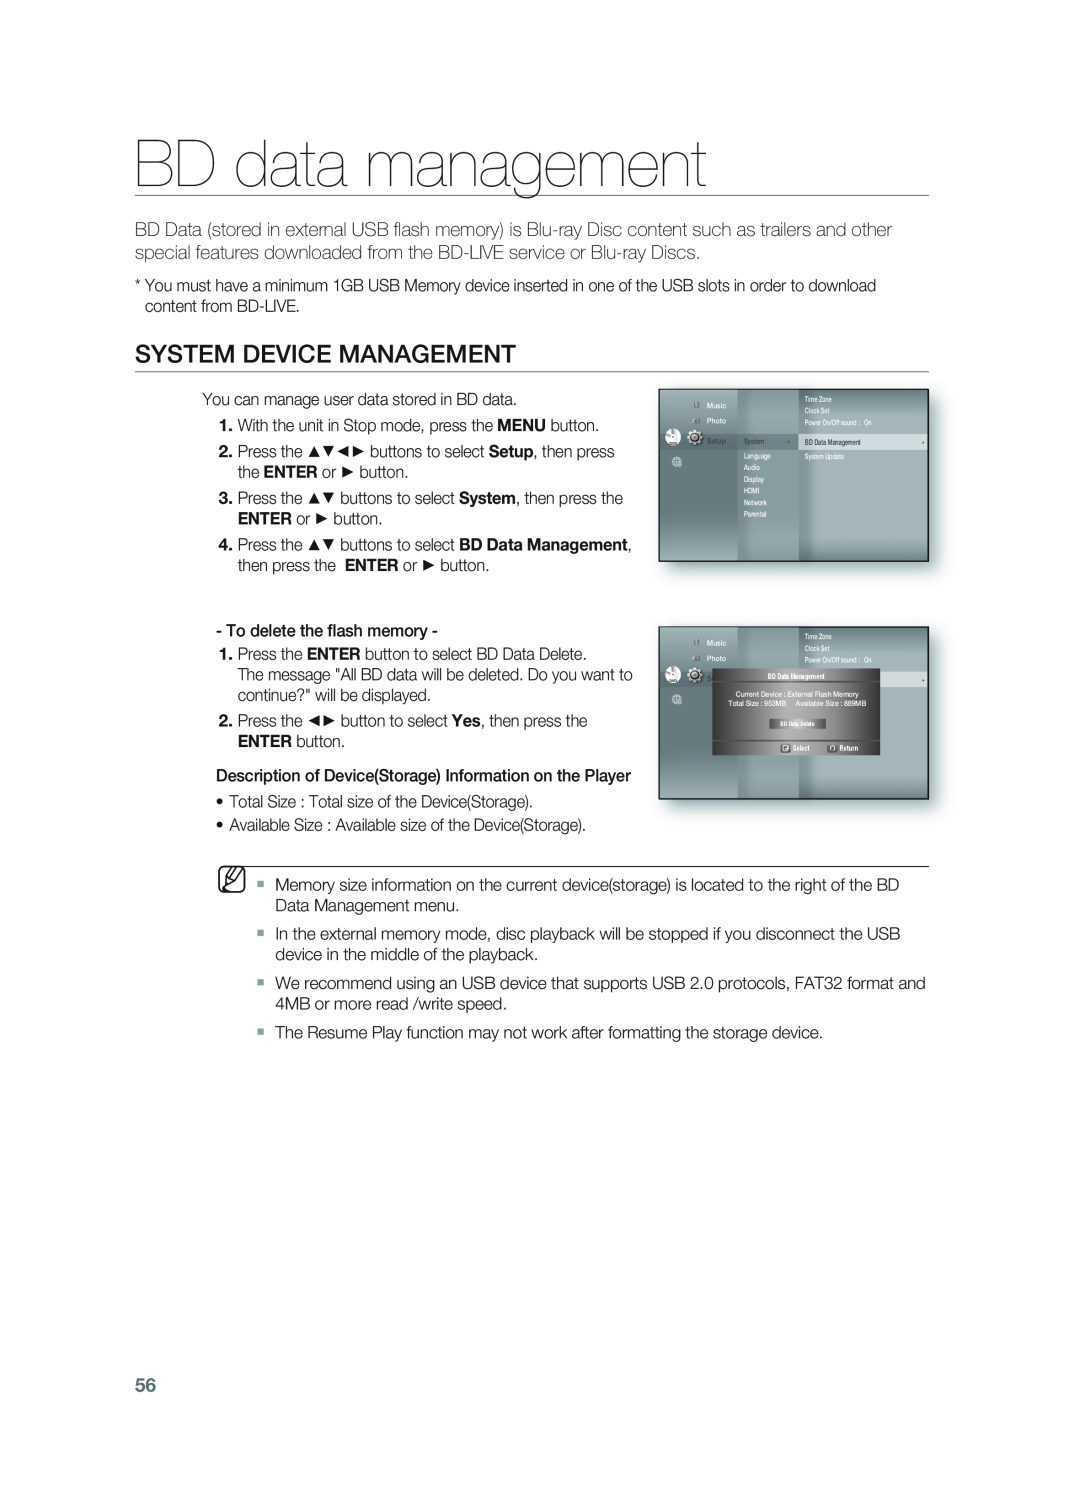 Samsung HT-BD1255, HT-BD1252 user manual BD data management, System Device Management 